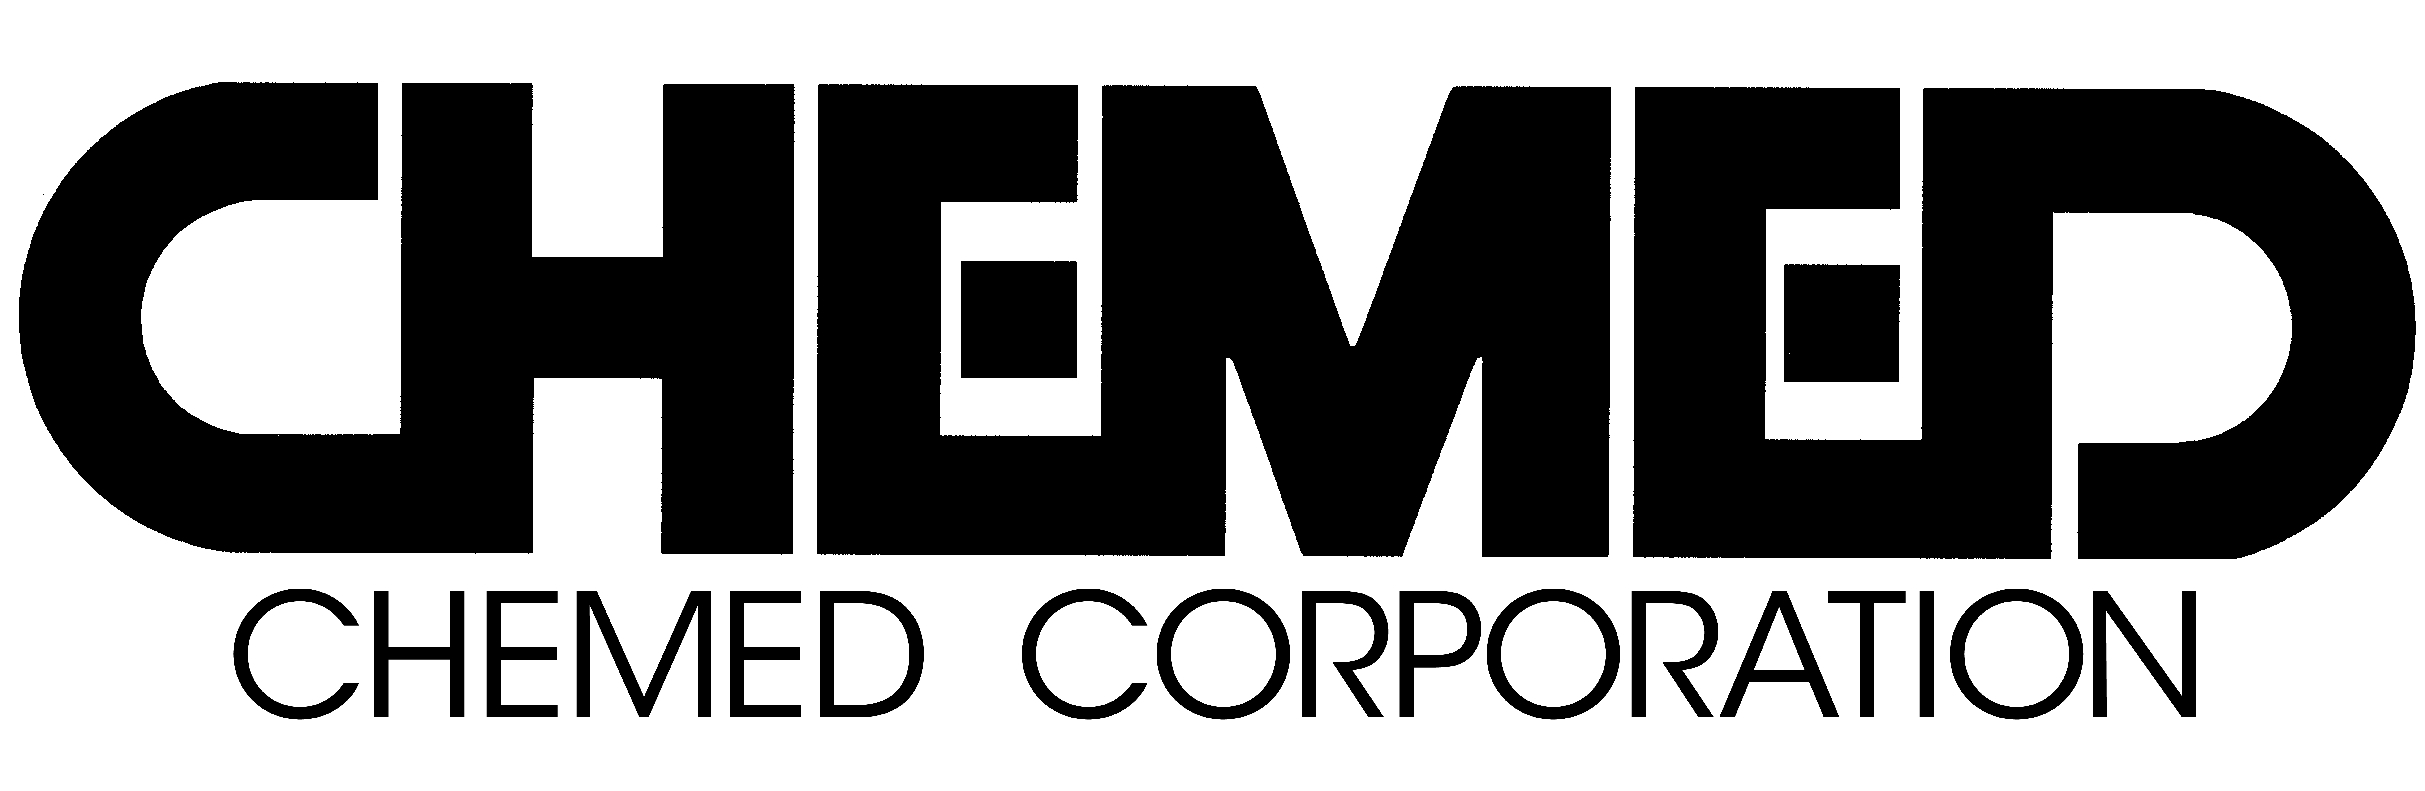 https://mms.businesswire.com/media/20240308918433/en/394682/5/Chemed_Corp_logo.jpg 